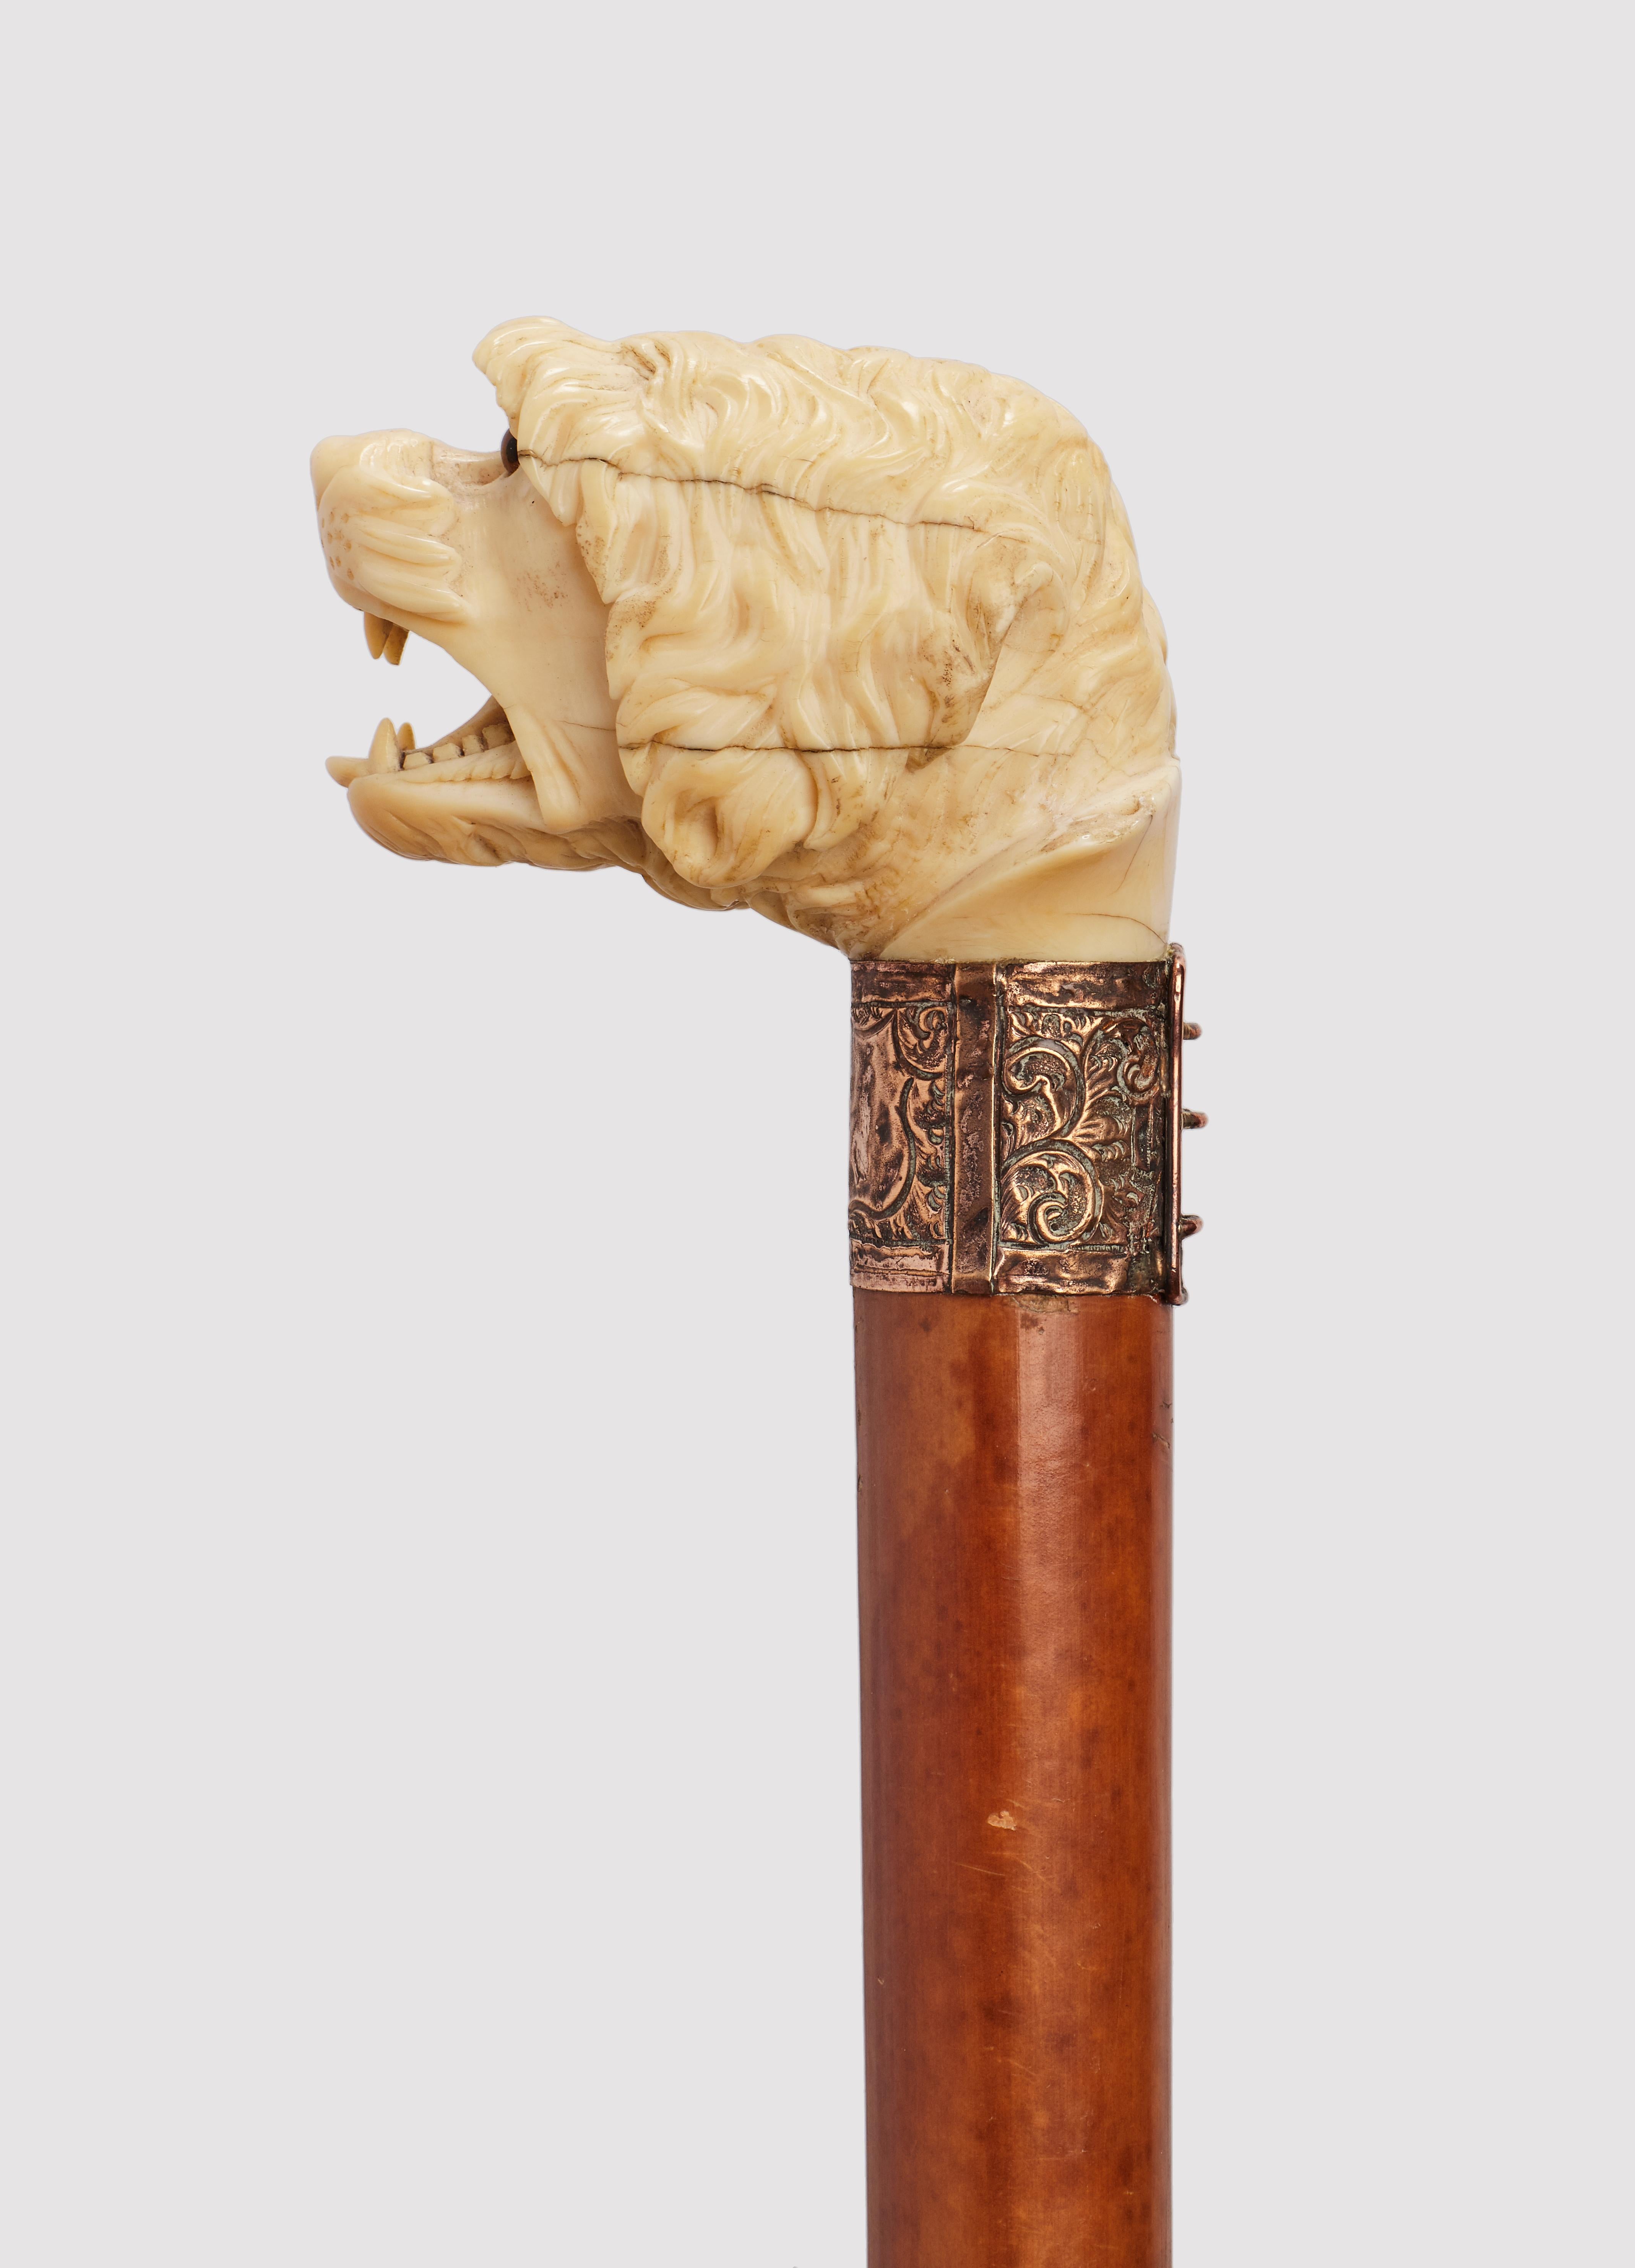 Canne : poignée en ivoire sculpté représentant une tête de chien à la gueule ouverte. Yeux en verre sulfurisé. Arbre en bois de Malacca. Anneau en laiton. Virole en métal. Angleterre vers 1890. (LIVRAISON DANS L'UE UNIQUEMENT)